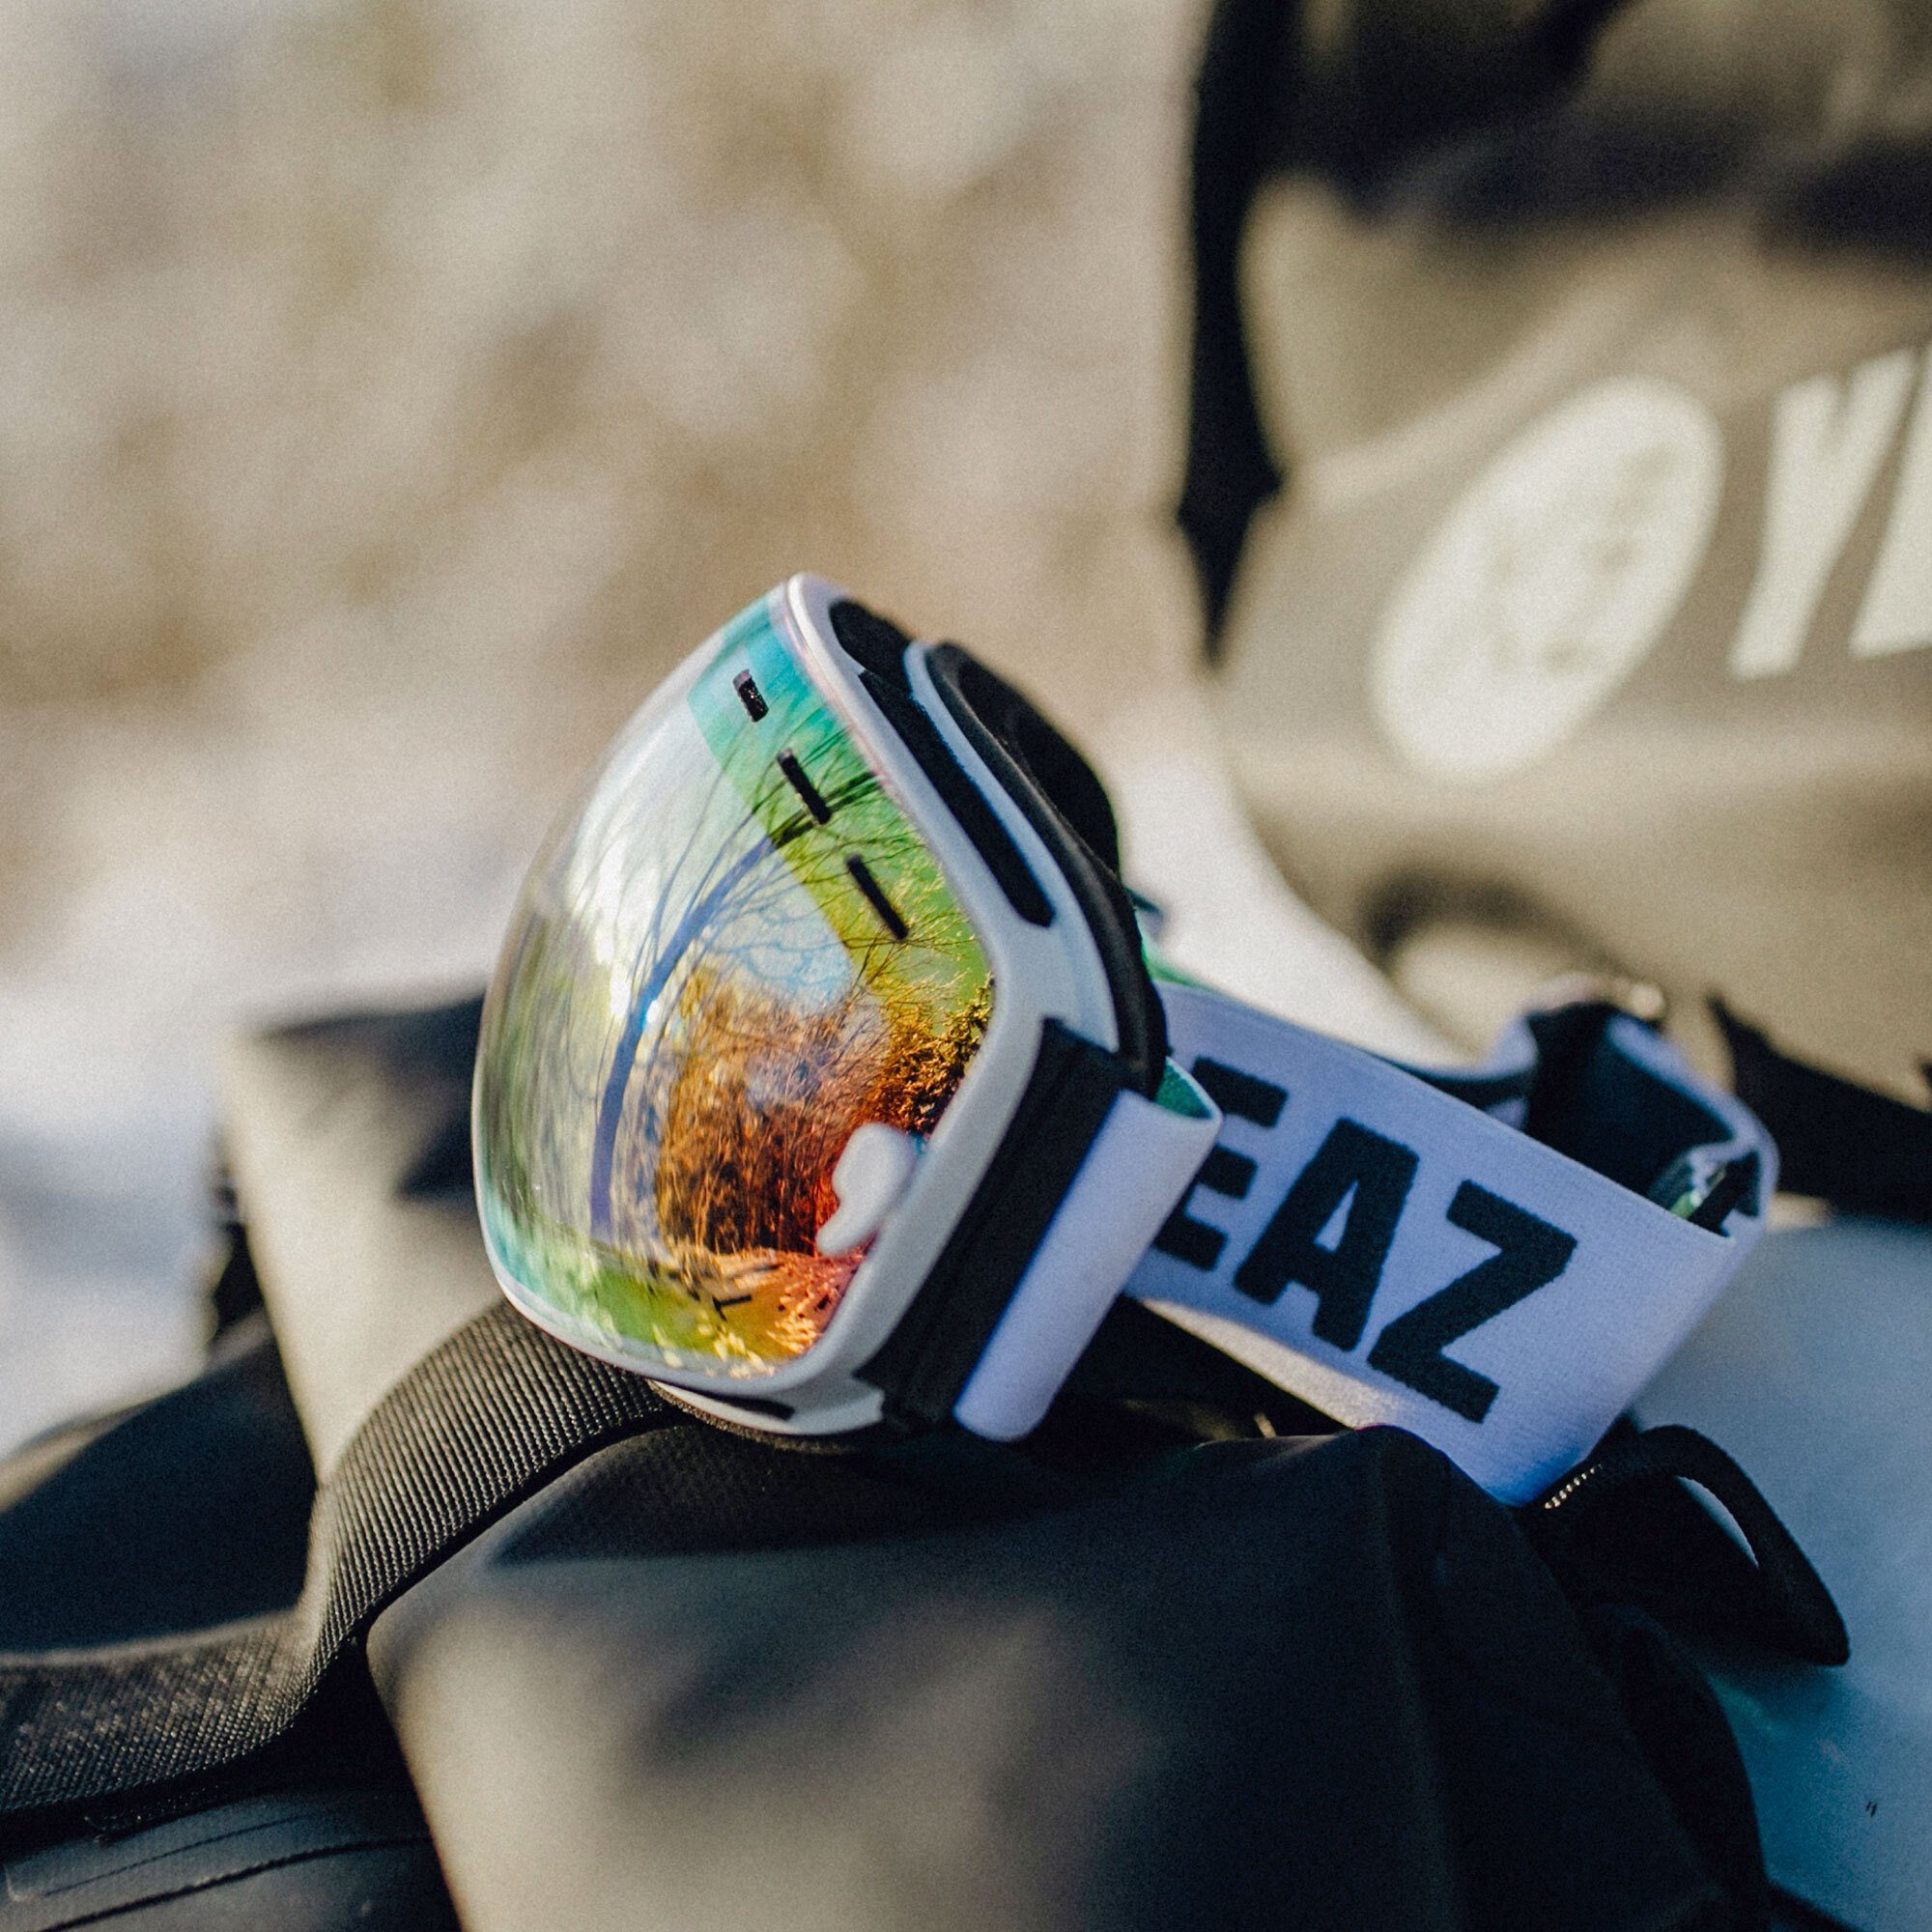 und und Erwachsene XTRM-SUMMIT, für Skibrille Snowboardbrille YEAZ Premium-Ski- Jugendliche